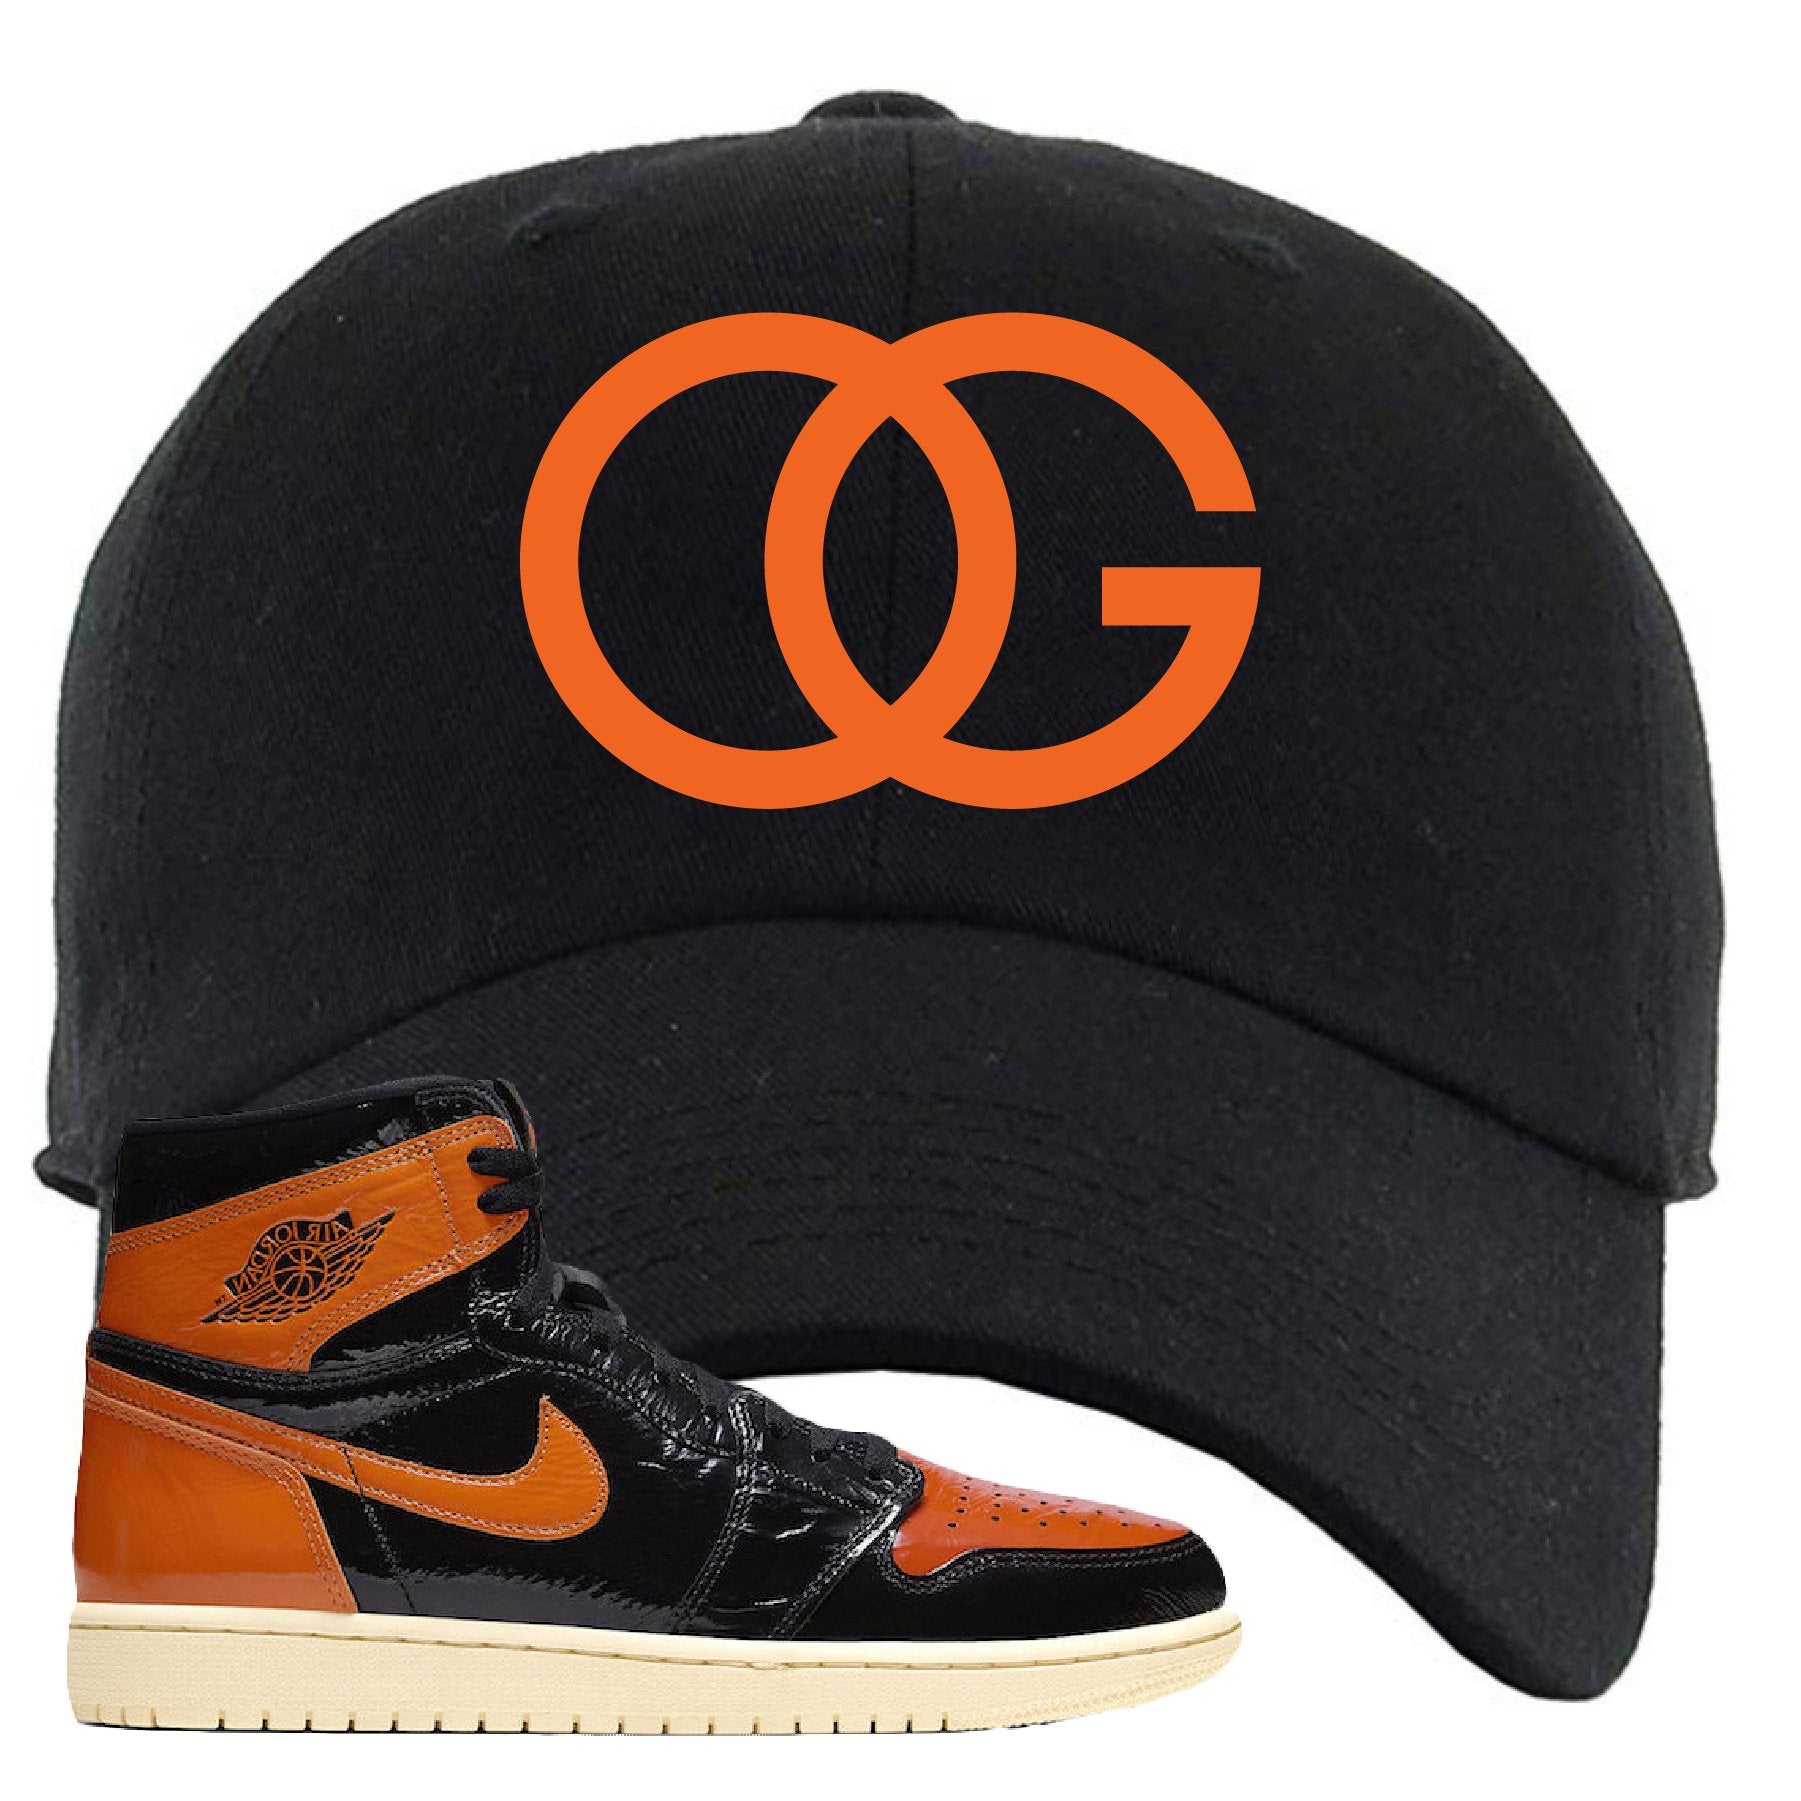 Jordan 1 Shattered Backboard OG Black Sneaker Hook Up Dad Hat